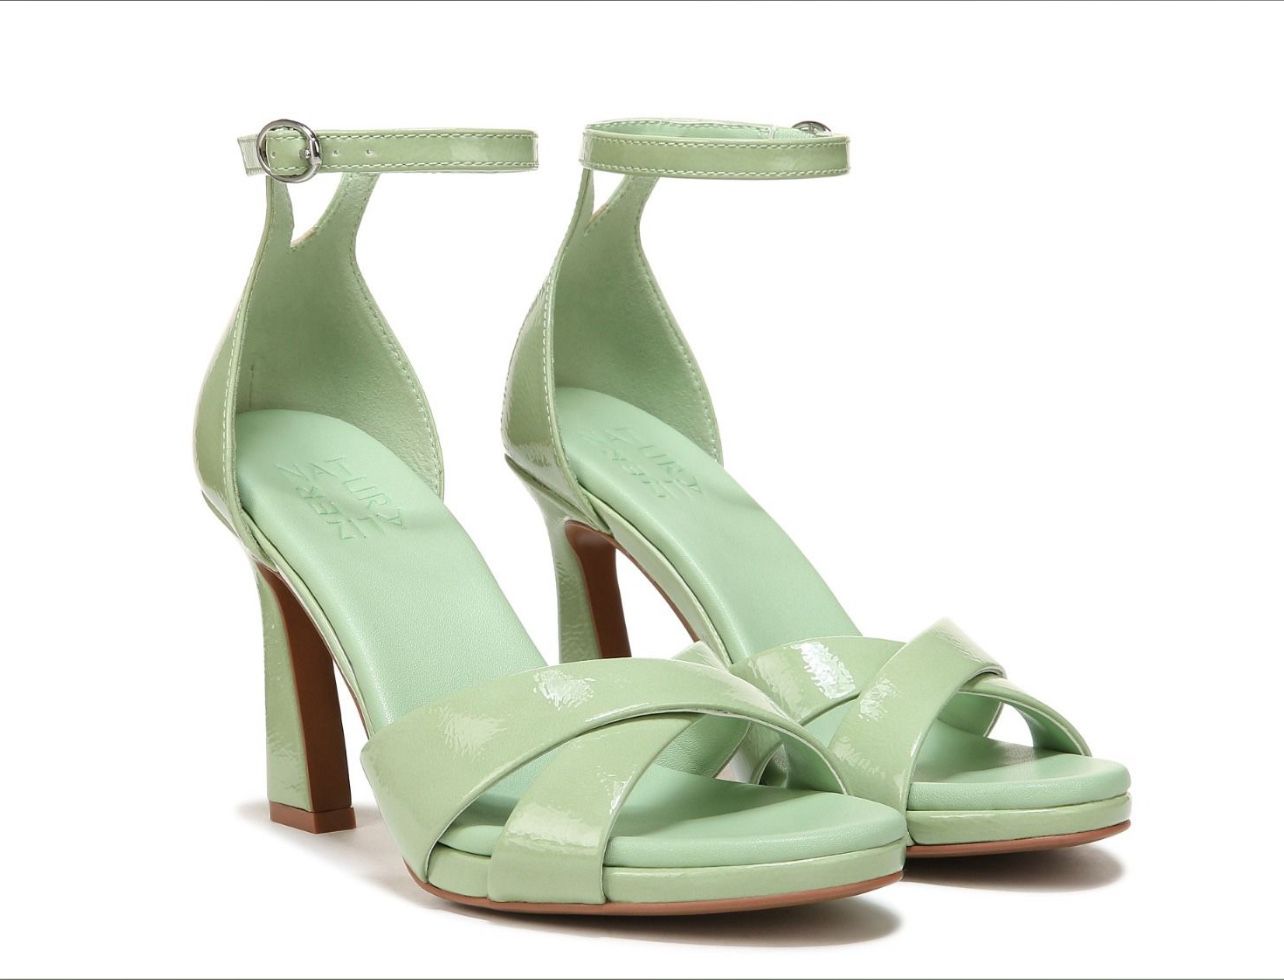 Naturalizer Lizbeth Dress Sandals In Mint Green Color Size 8